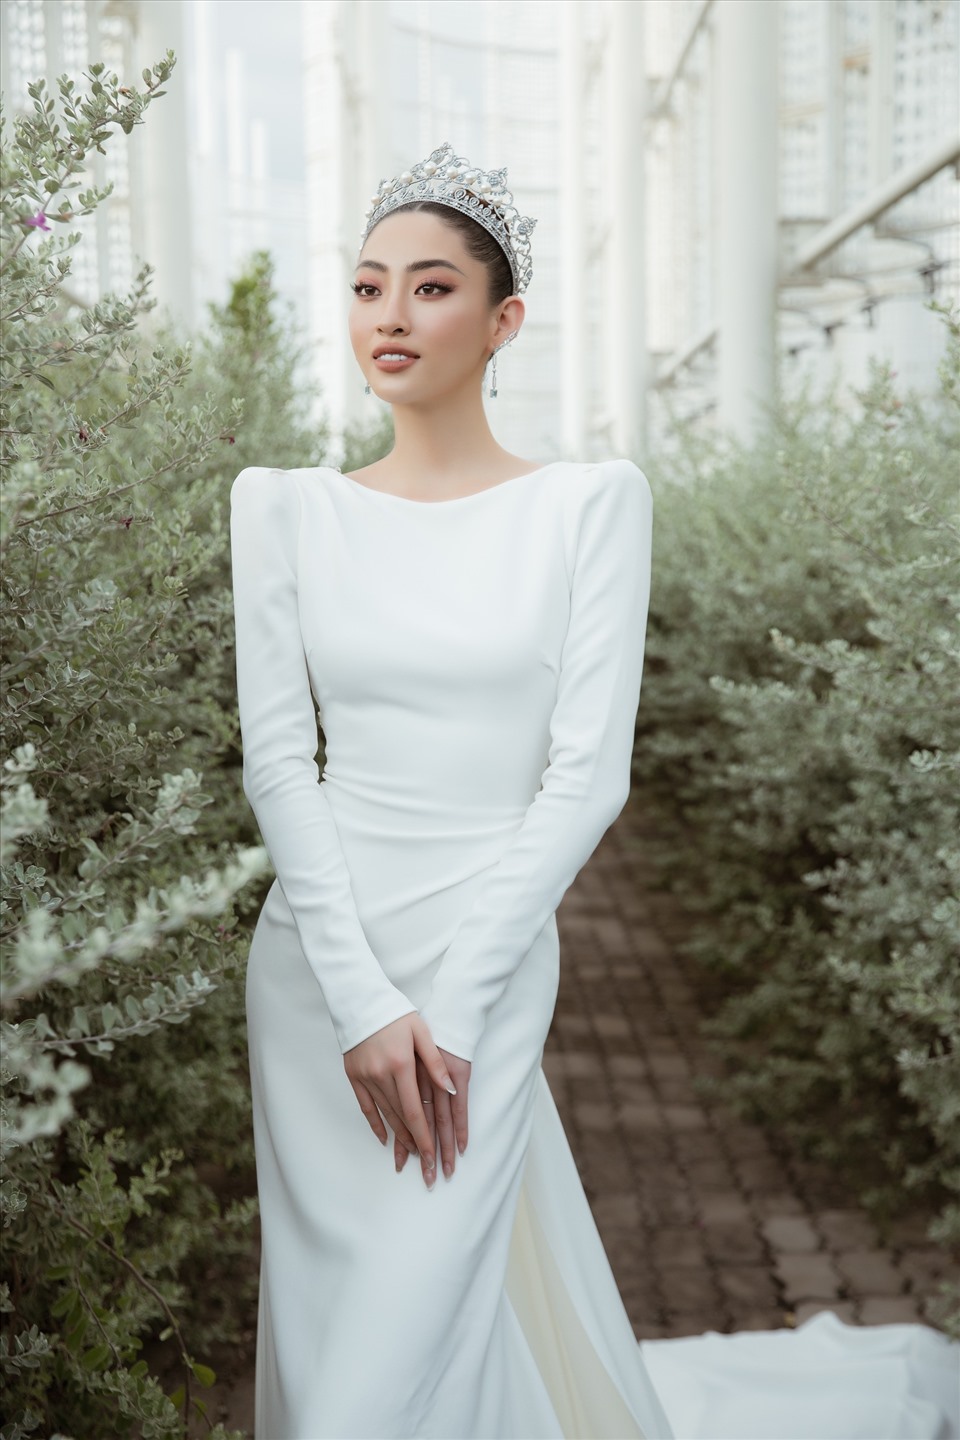 Suốt 2 năm nhiệm kỳ, Lương Thùy Linh là cái tên nổi bật ở nhiều lĩnh vực khác nhau. Cô không chỉ ghi dấu tại đấu trường nhan sắc Miss World 2019 với thành tích top 12 mà còn sở hữu nhiều thành tích ấn tượng khác nhờ sự thông minh, ứng biến khôn khéo của mình.